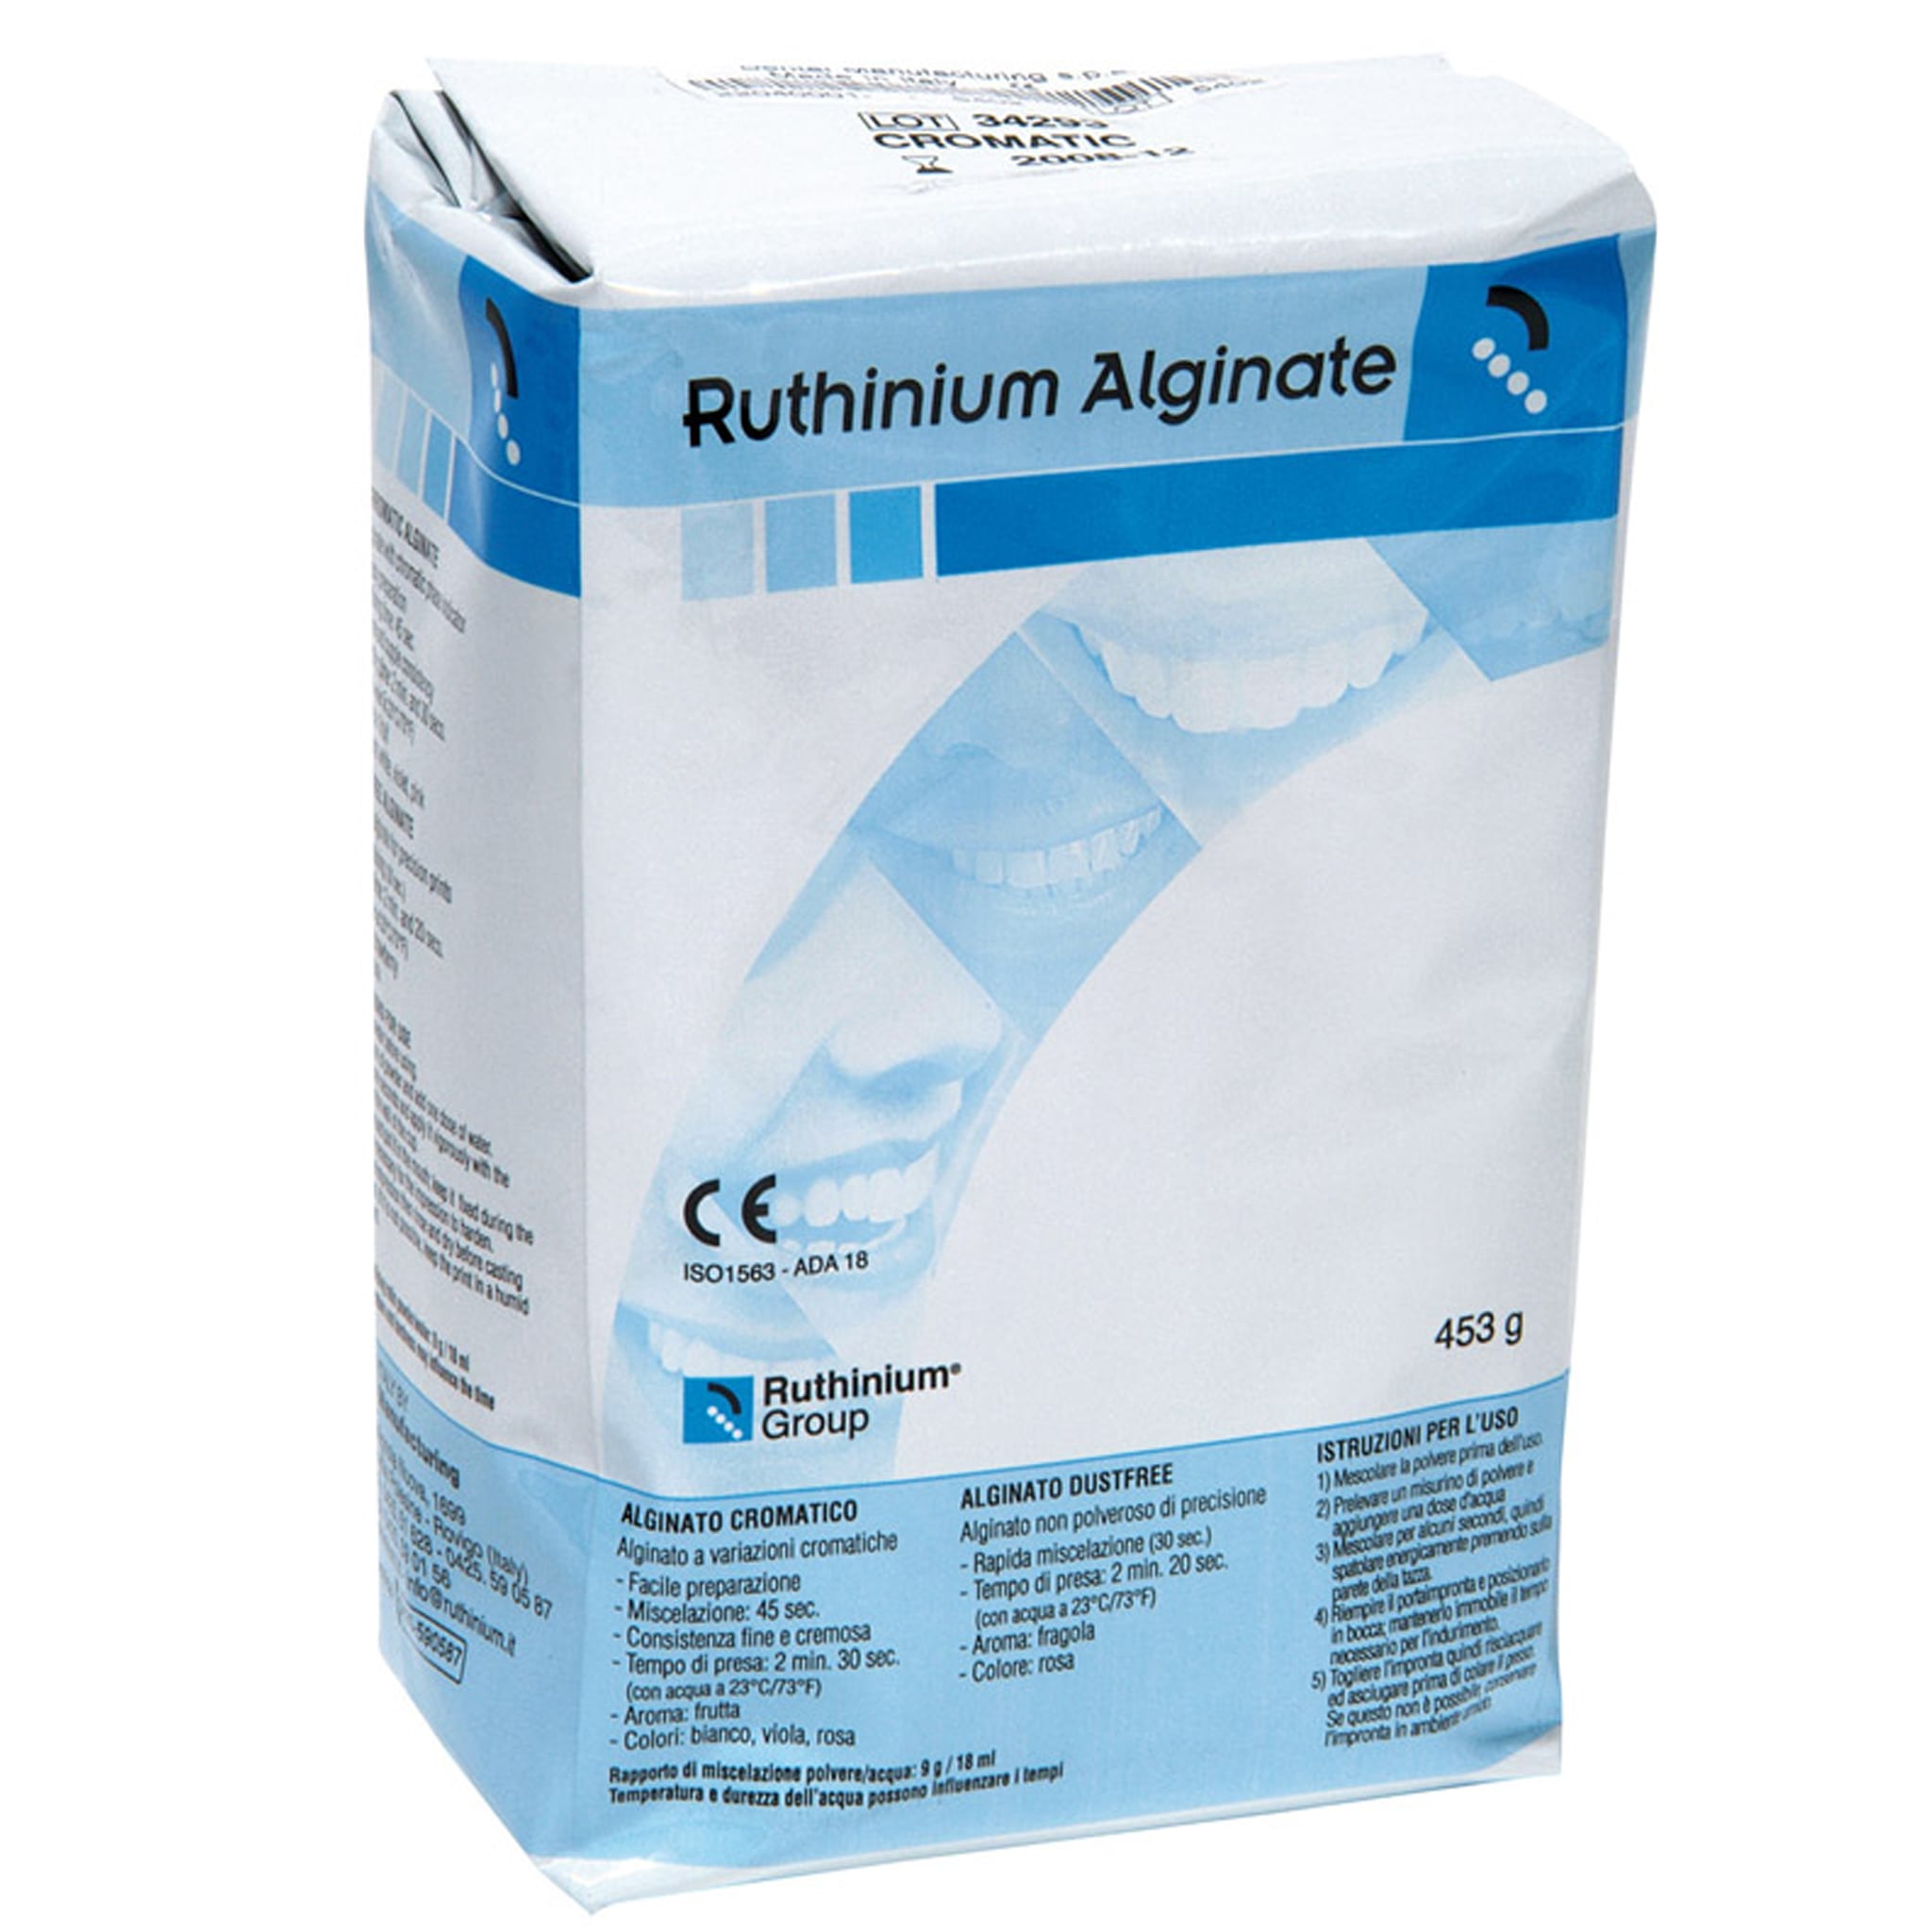 Ruthinium Chromatic Alginate